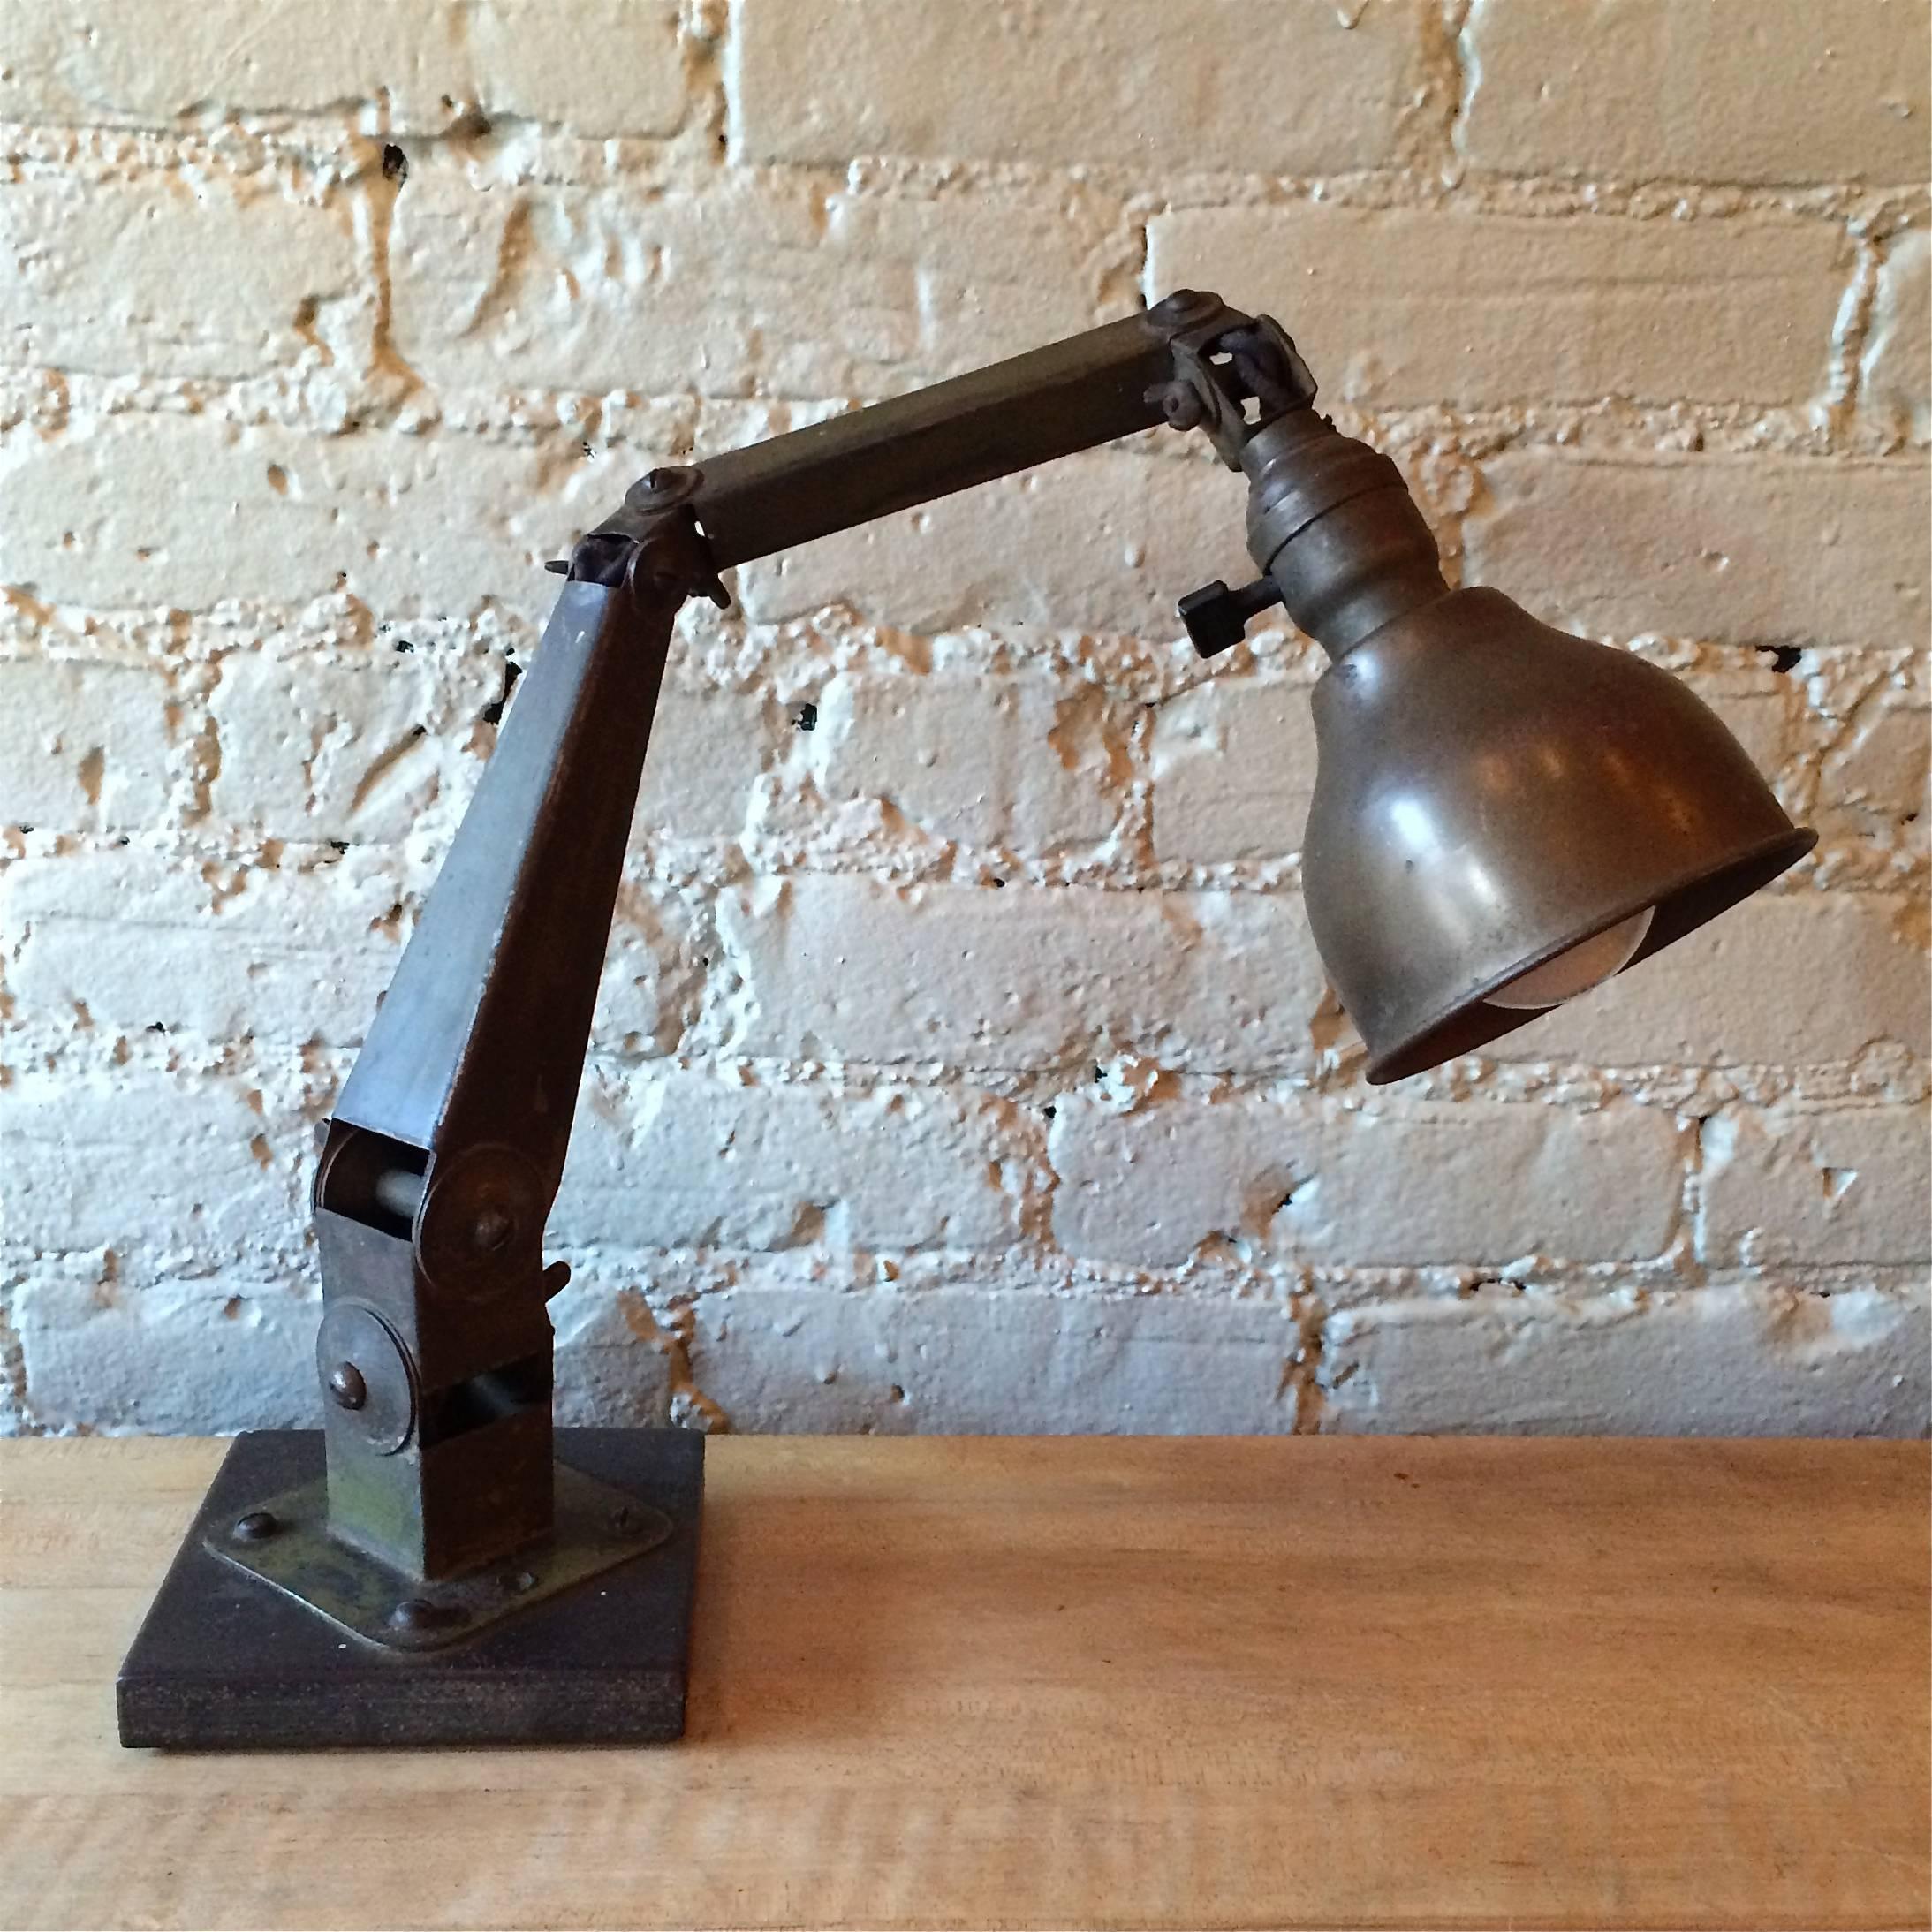 Industrielle Schreibtischlampe aus lackiertem Stahl, ca. 1940, mit Originallackierung, an drei Gelenken beweglich und neu verkabelt.

 